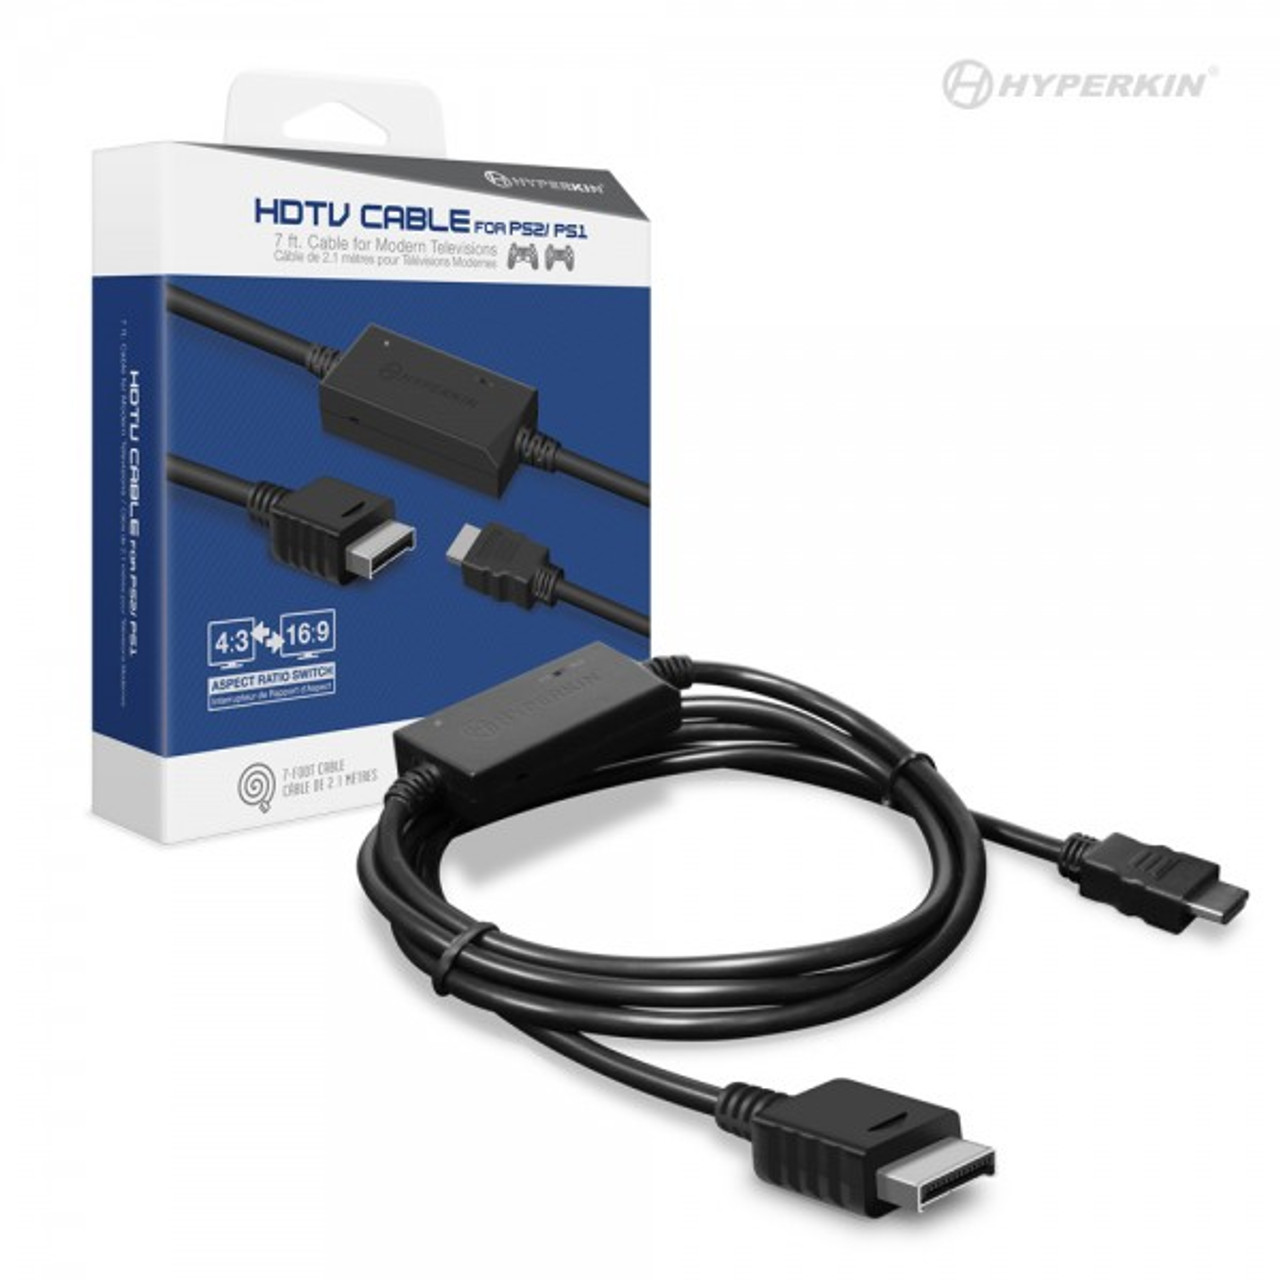 ozon tilpasningsevne montage HDMI Cable for PlayStation 1 at Videogamesnewyork, NY